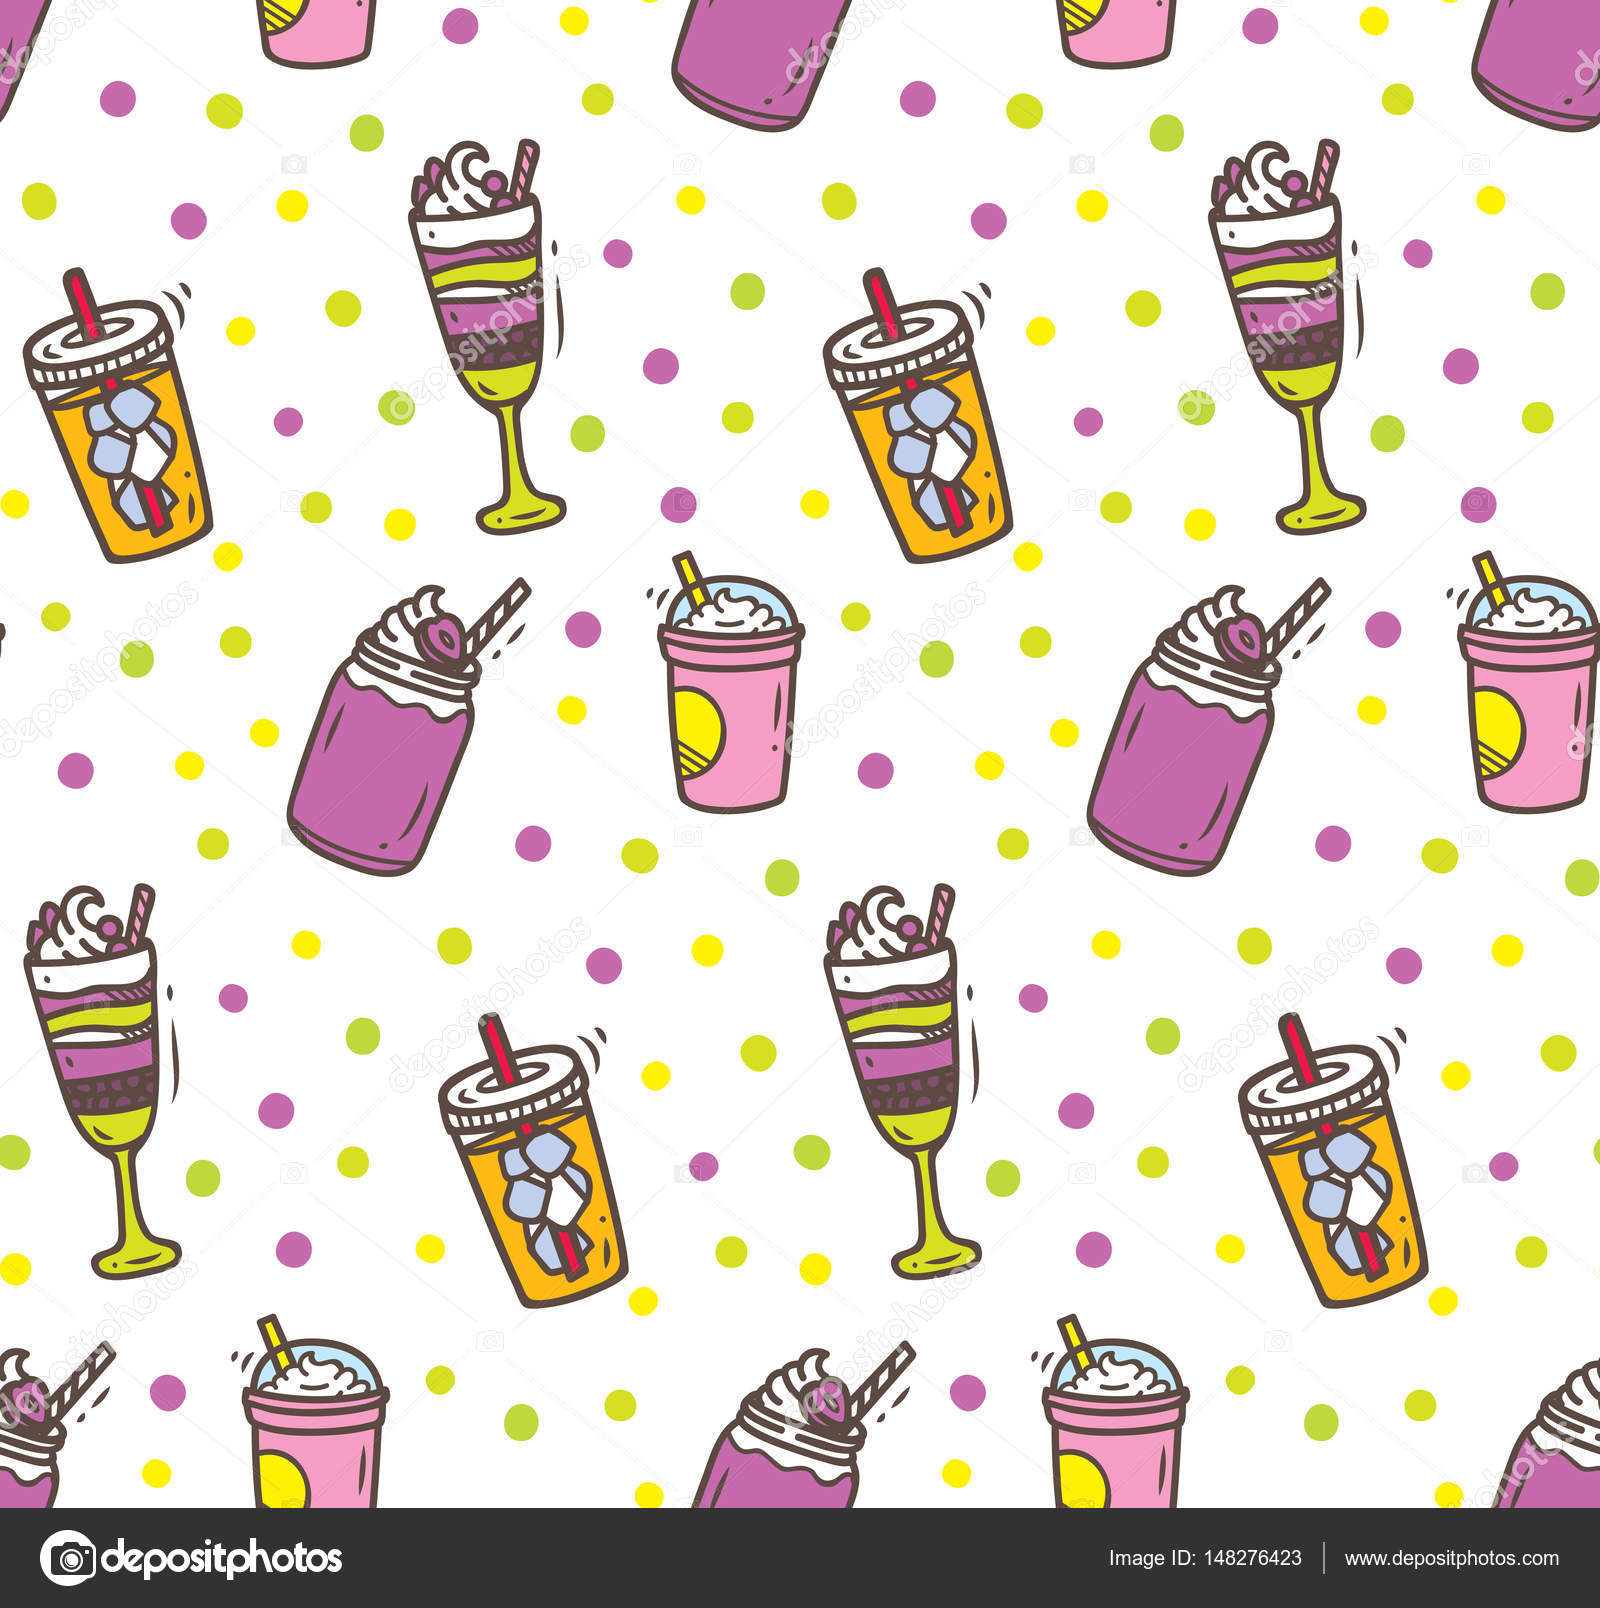 Bộ sưu tập tuyệt đẹp với Beverages Doodle Background sẽ khiến cho menu thức uống của bạn trở nên độc đáo và thú vị hơn. Hình ảnh dễ thương và màu sắc tươi sáng sẽ thu hút khách hàng và khiến cho họ muốn đến thử các loại thức uống của bạn. Xem chi tiết hình ảnh để tìm hiểu thêm.